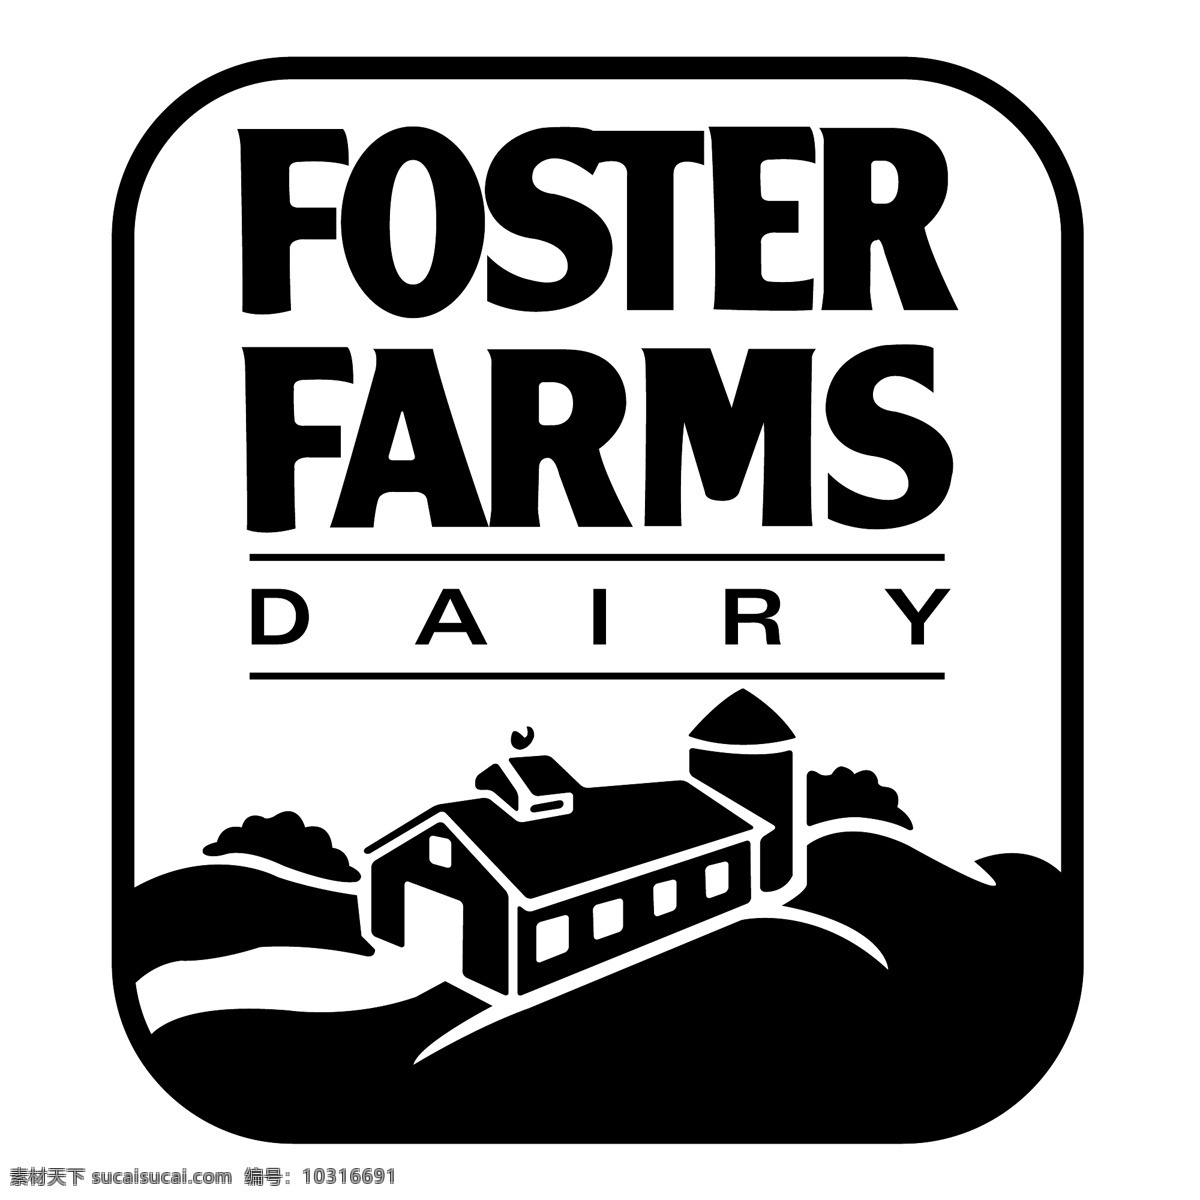 福斯特 农场 奶牛 标识 公司 免费 品牌 品牌标识 商标 矢量标志下载 免费矢量标识 矢量 psd源文件 logo设计